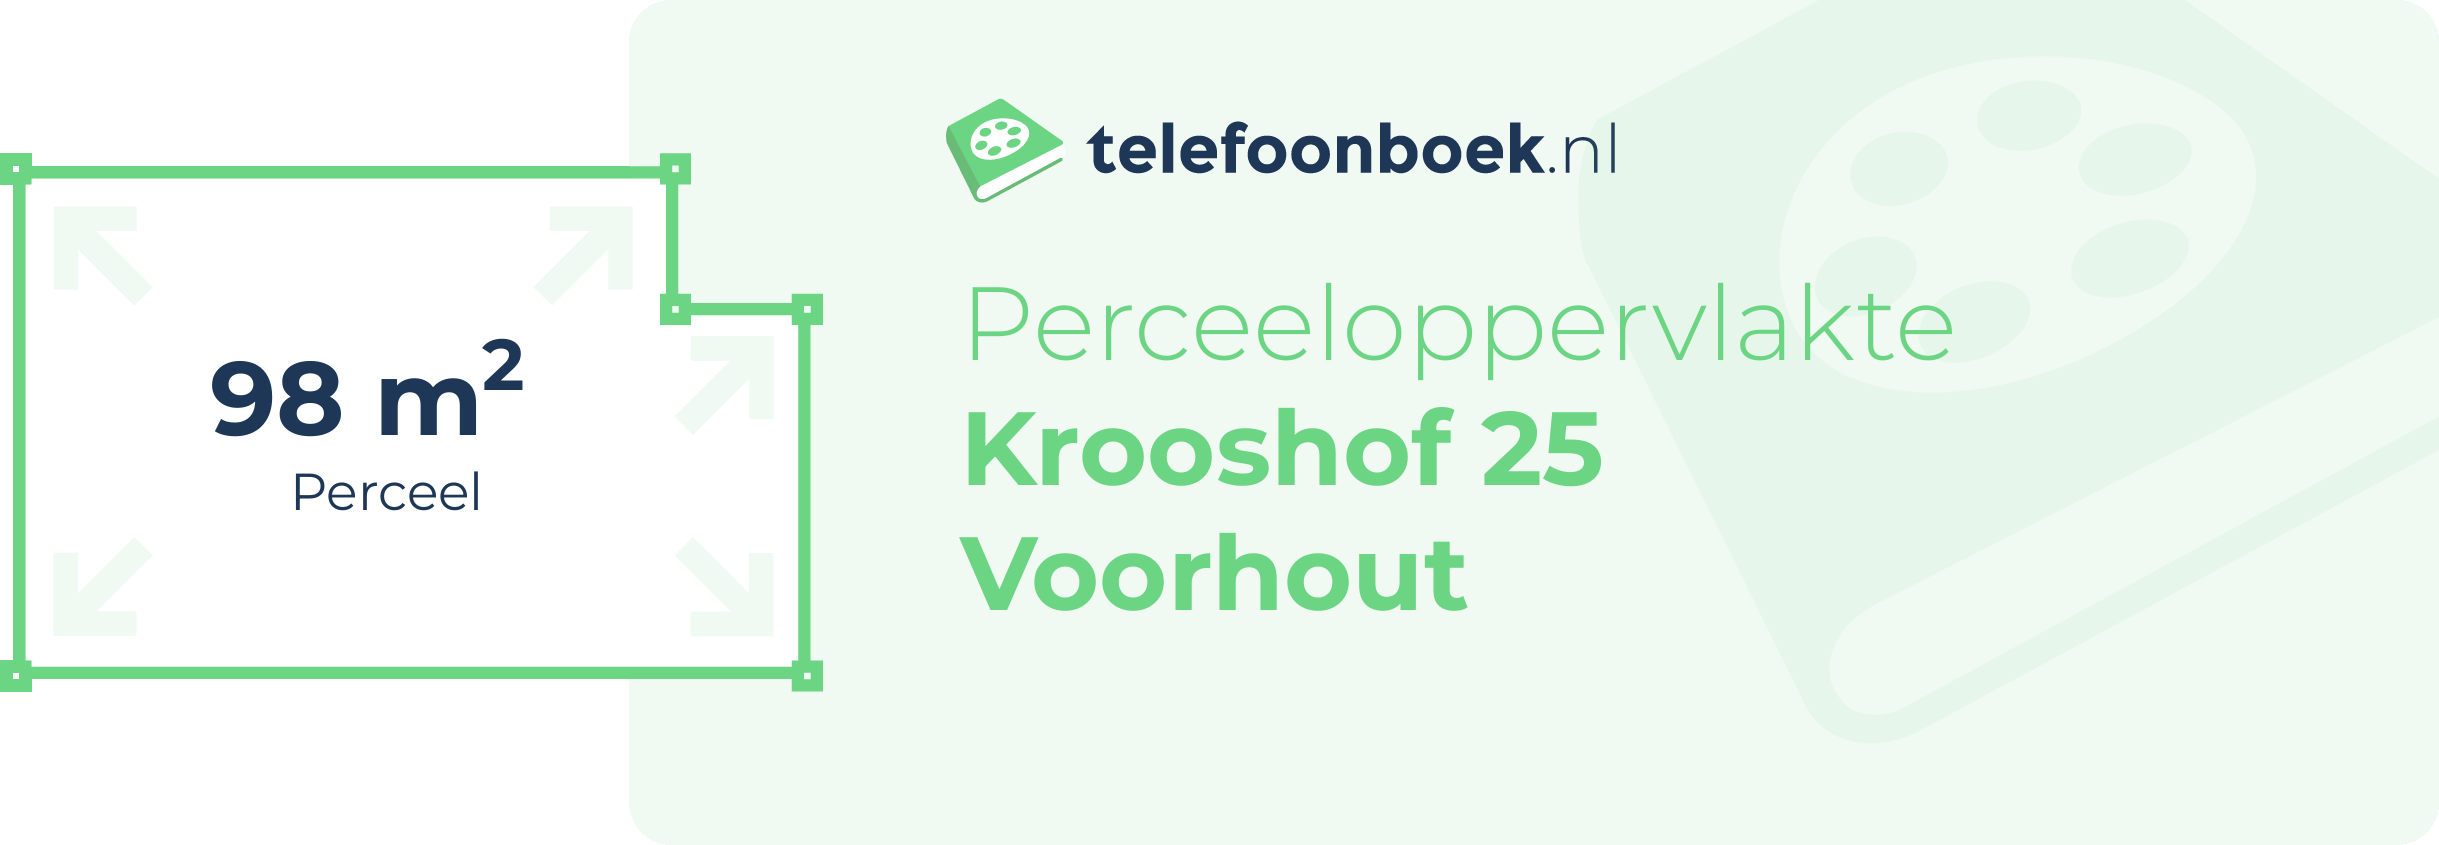 Perceeloppervlakte Krooshof 25 Voorhout